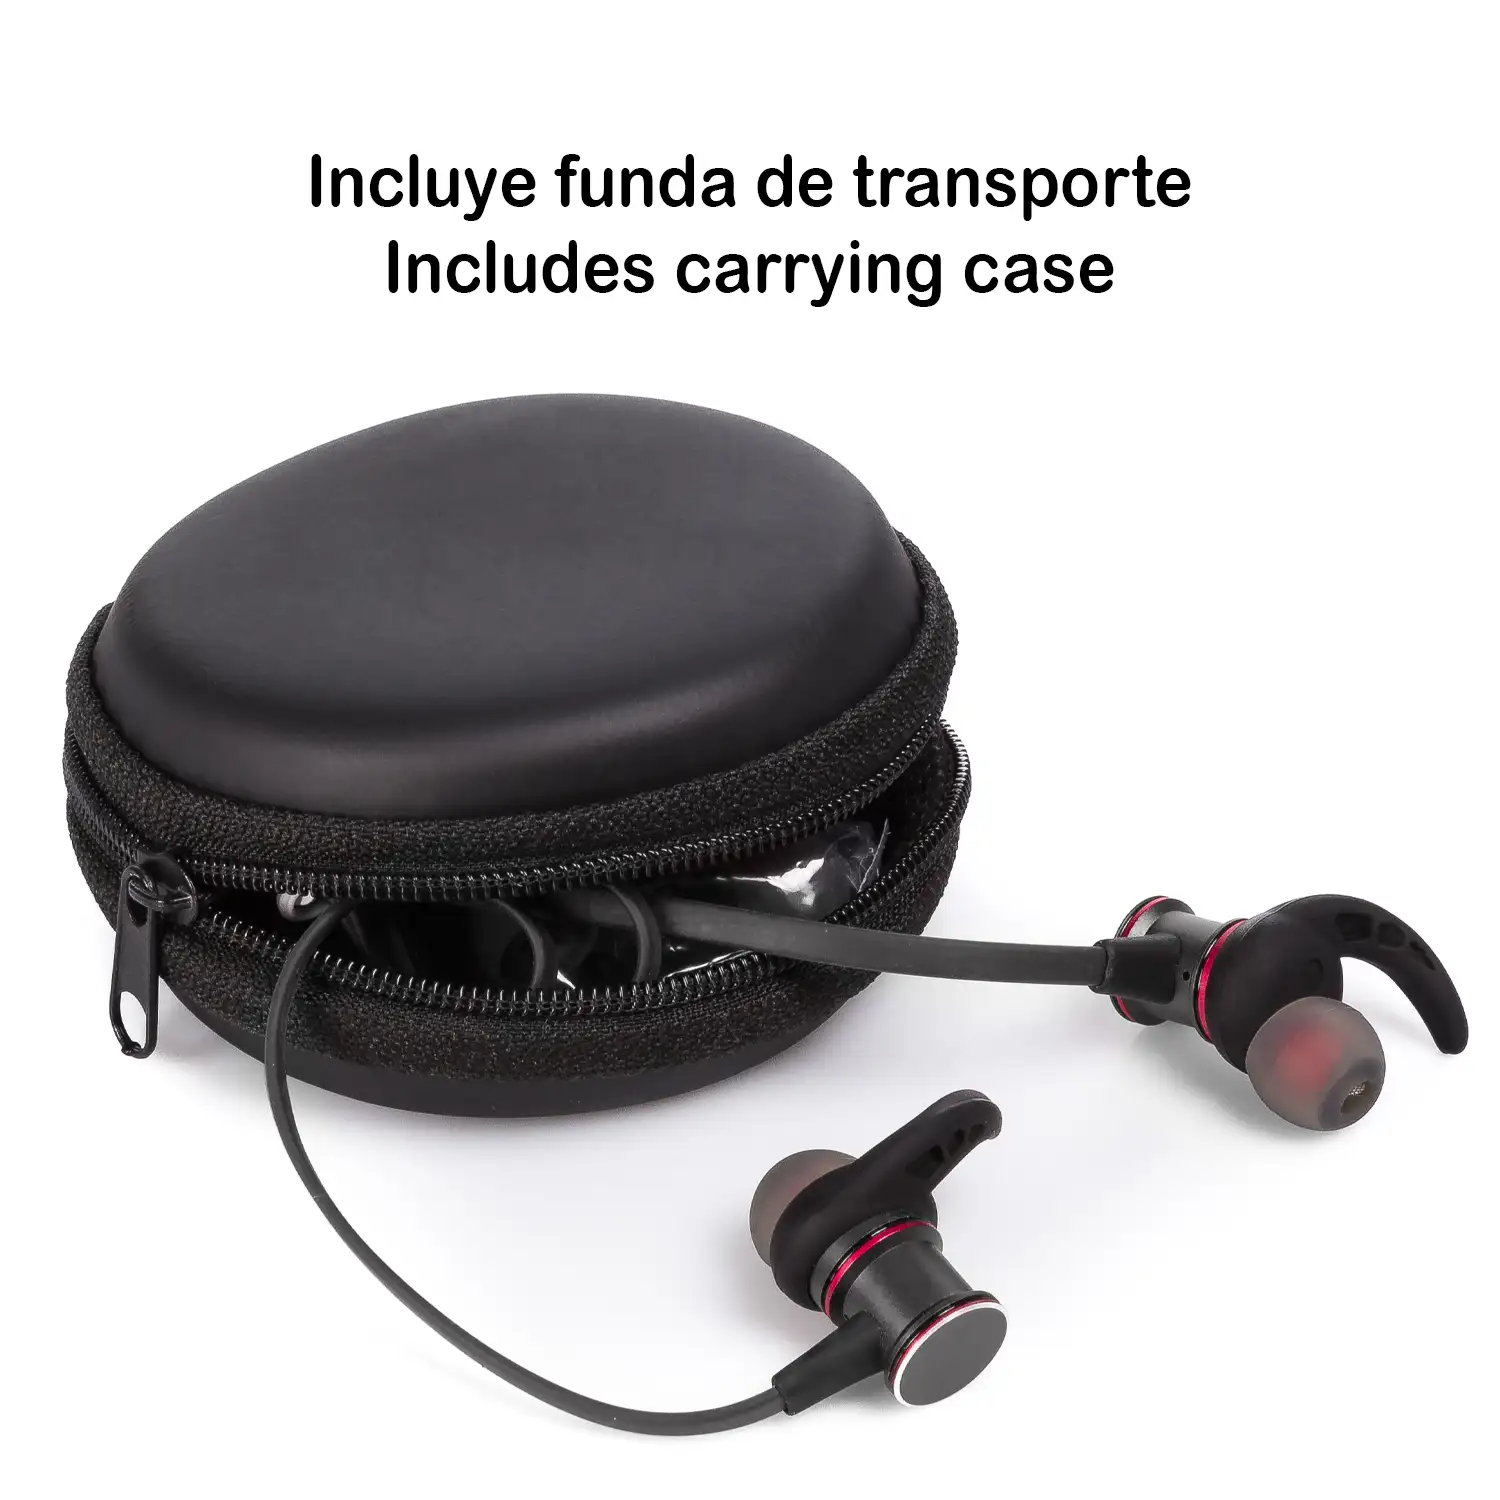 Auriculares deportivos 8S Bluetooth 4.1 con manos libres y mando de control